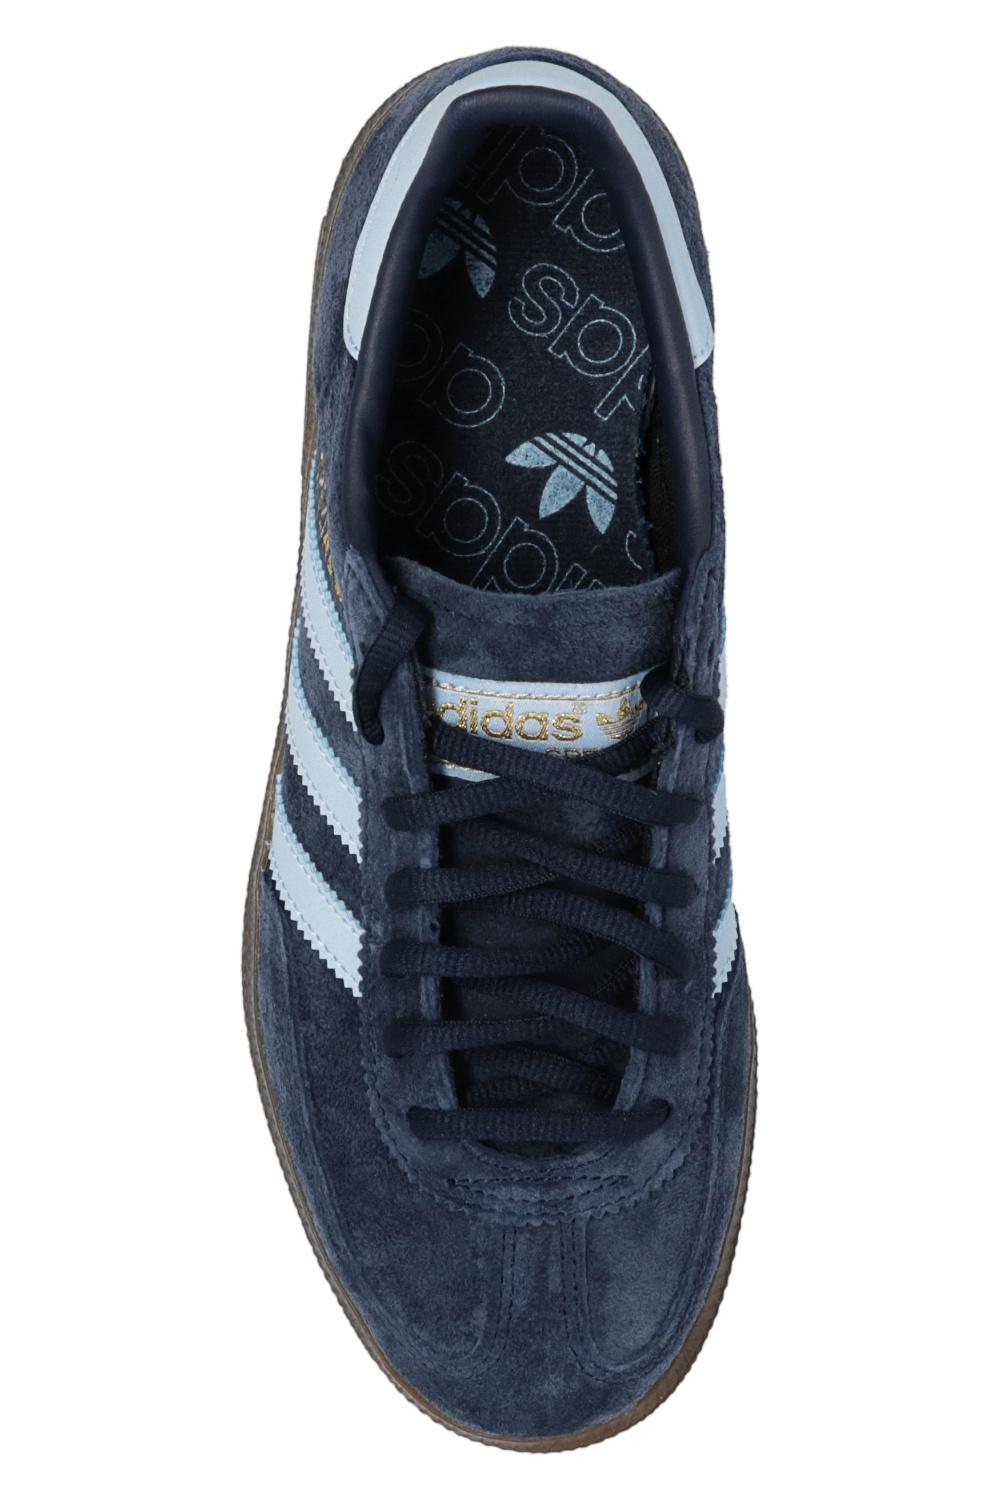 adidas Originals 'handball Spezial' Sneakers in Blue | Lyst Australia